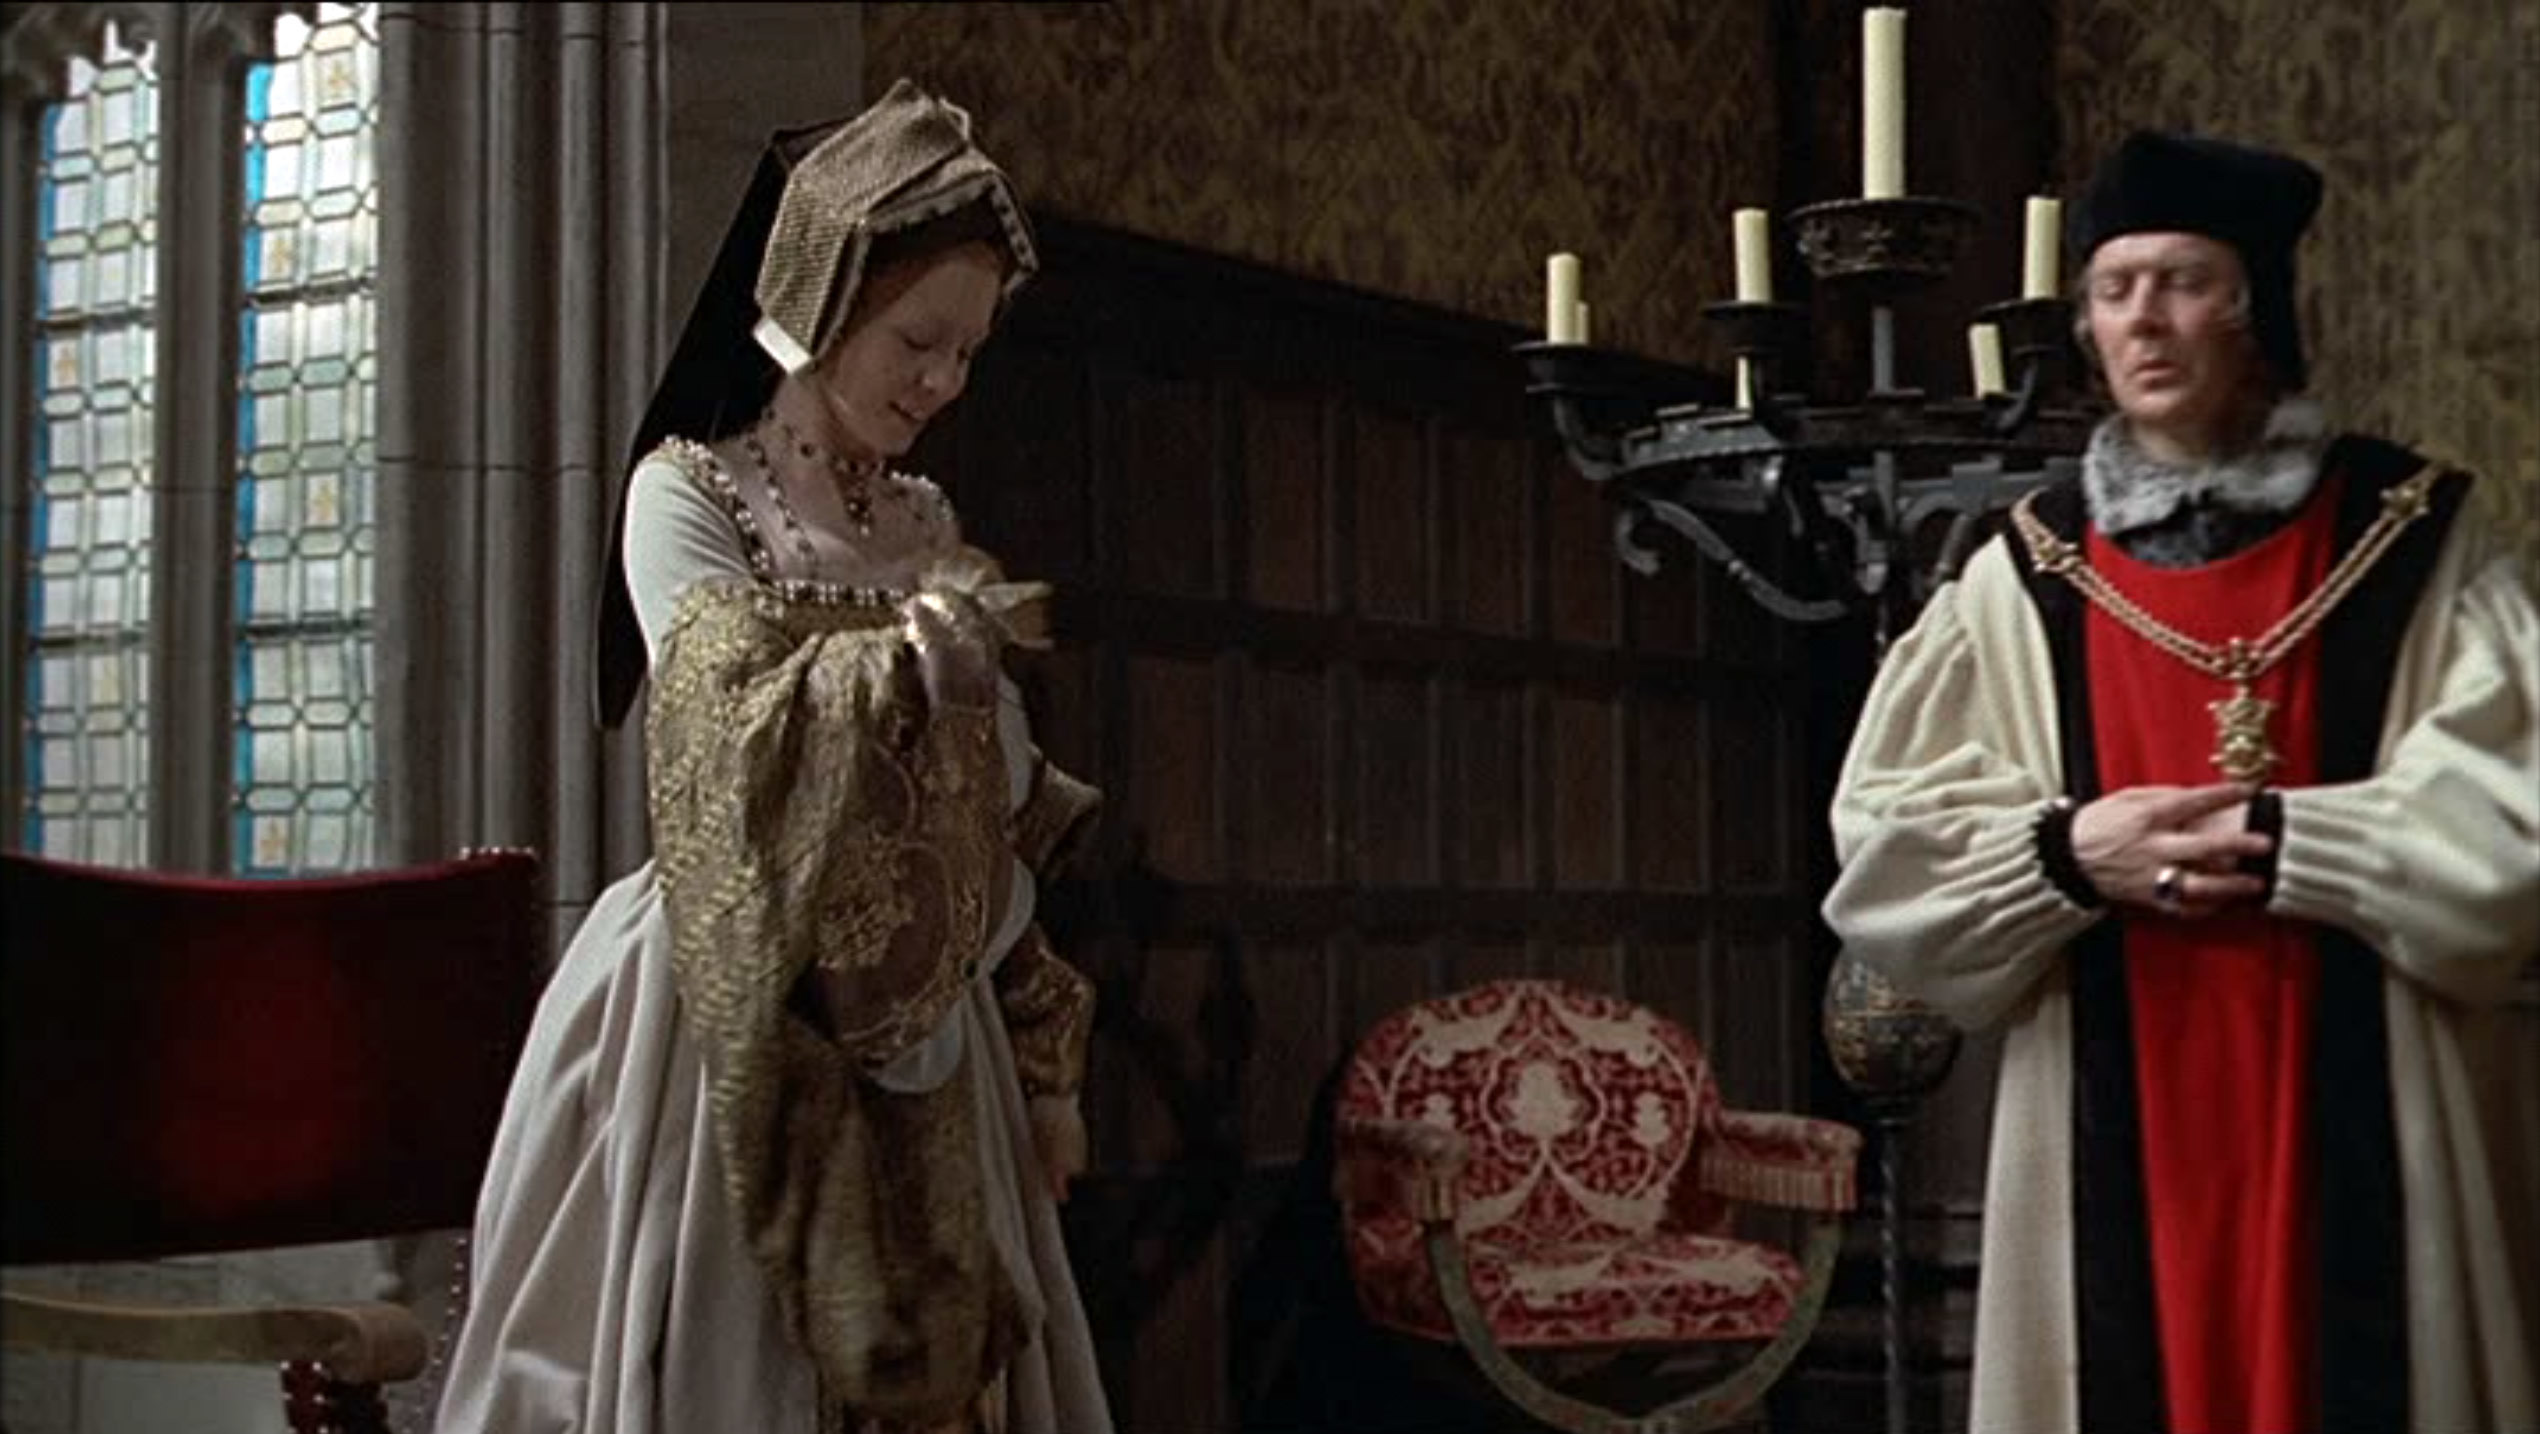 ジェーン・アッシャー（Jane Asher）「Henry VIII and His Six Wives」（1972）《後編》_e0042361_17093750.jpg